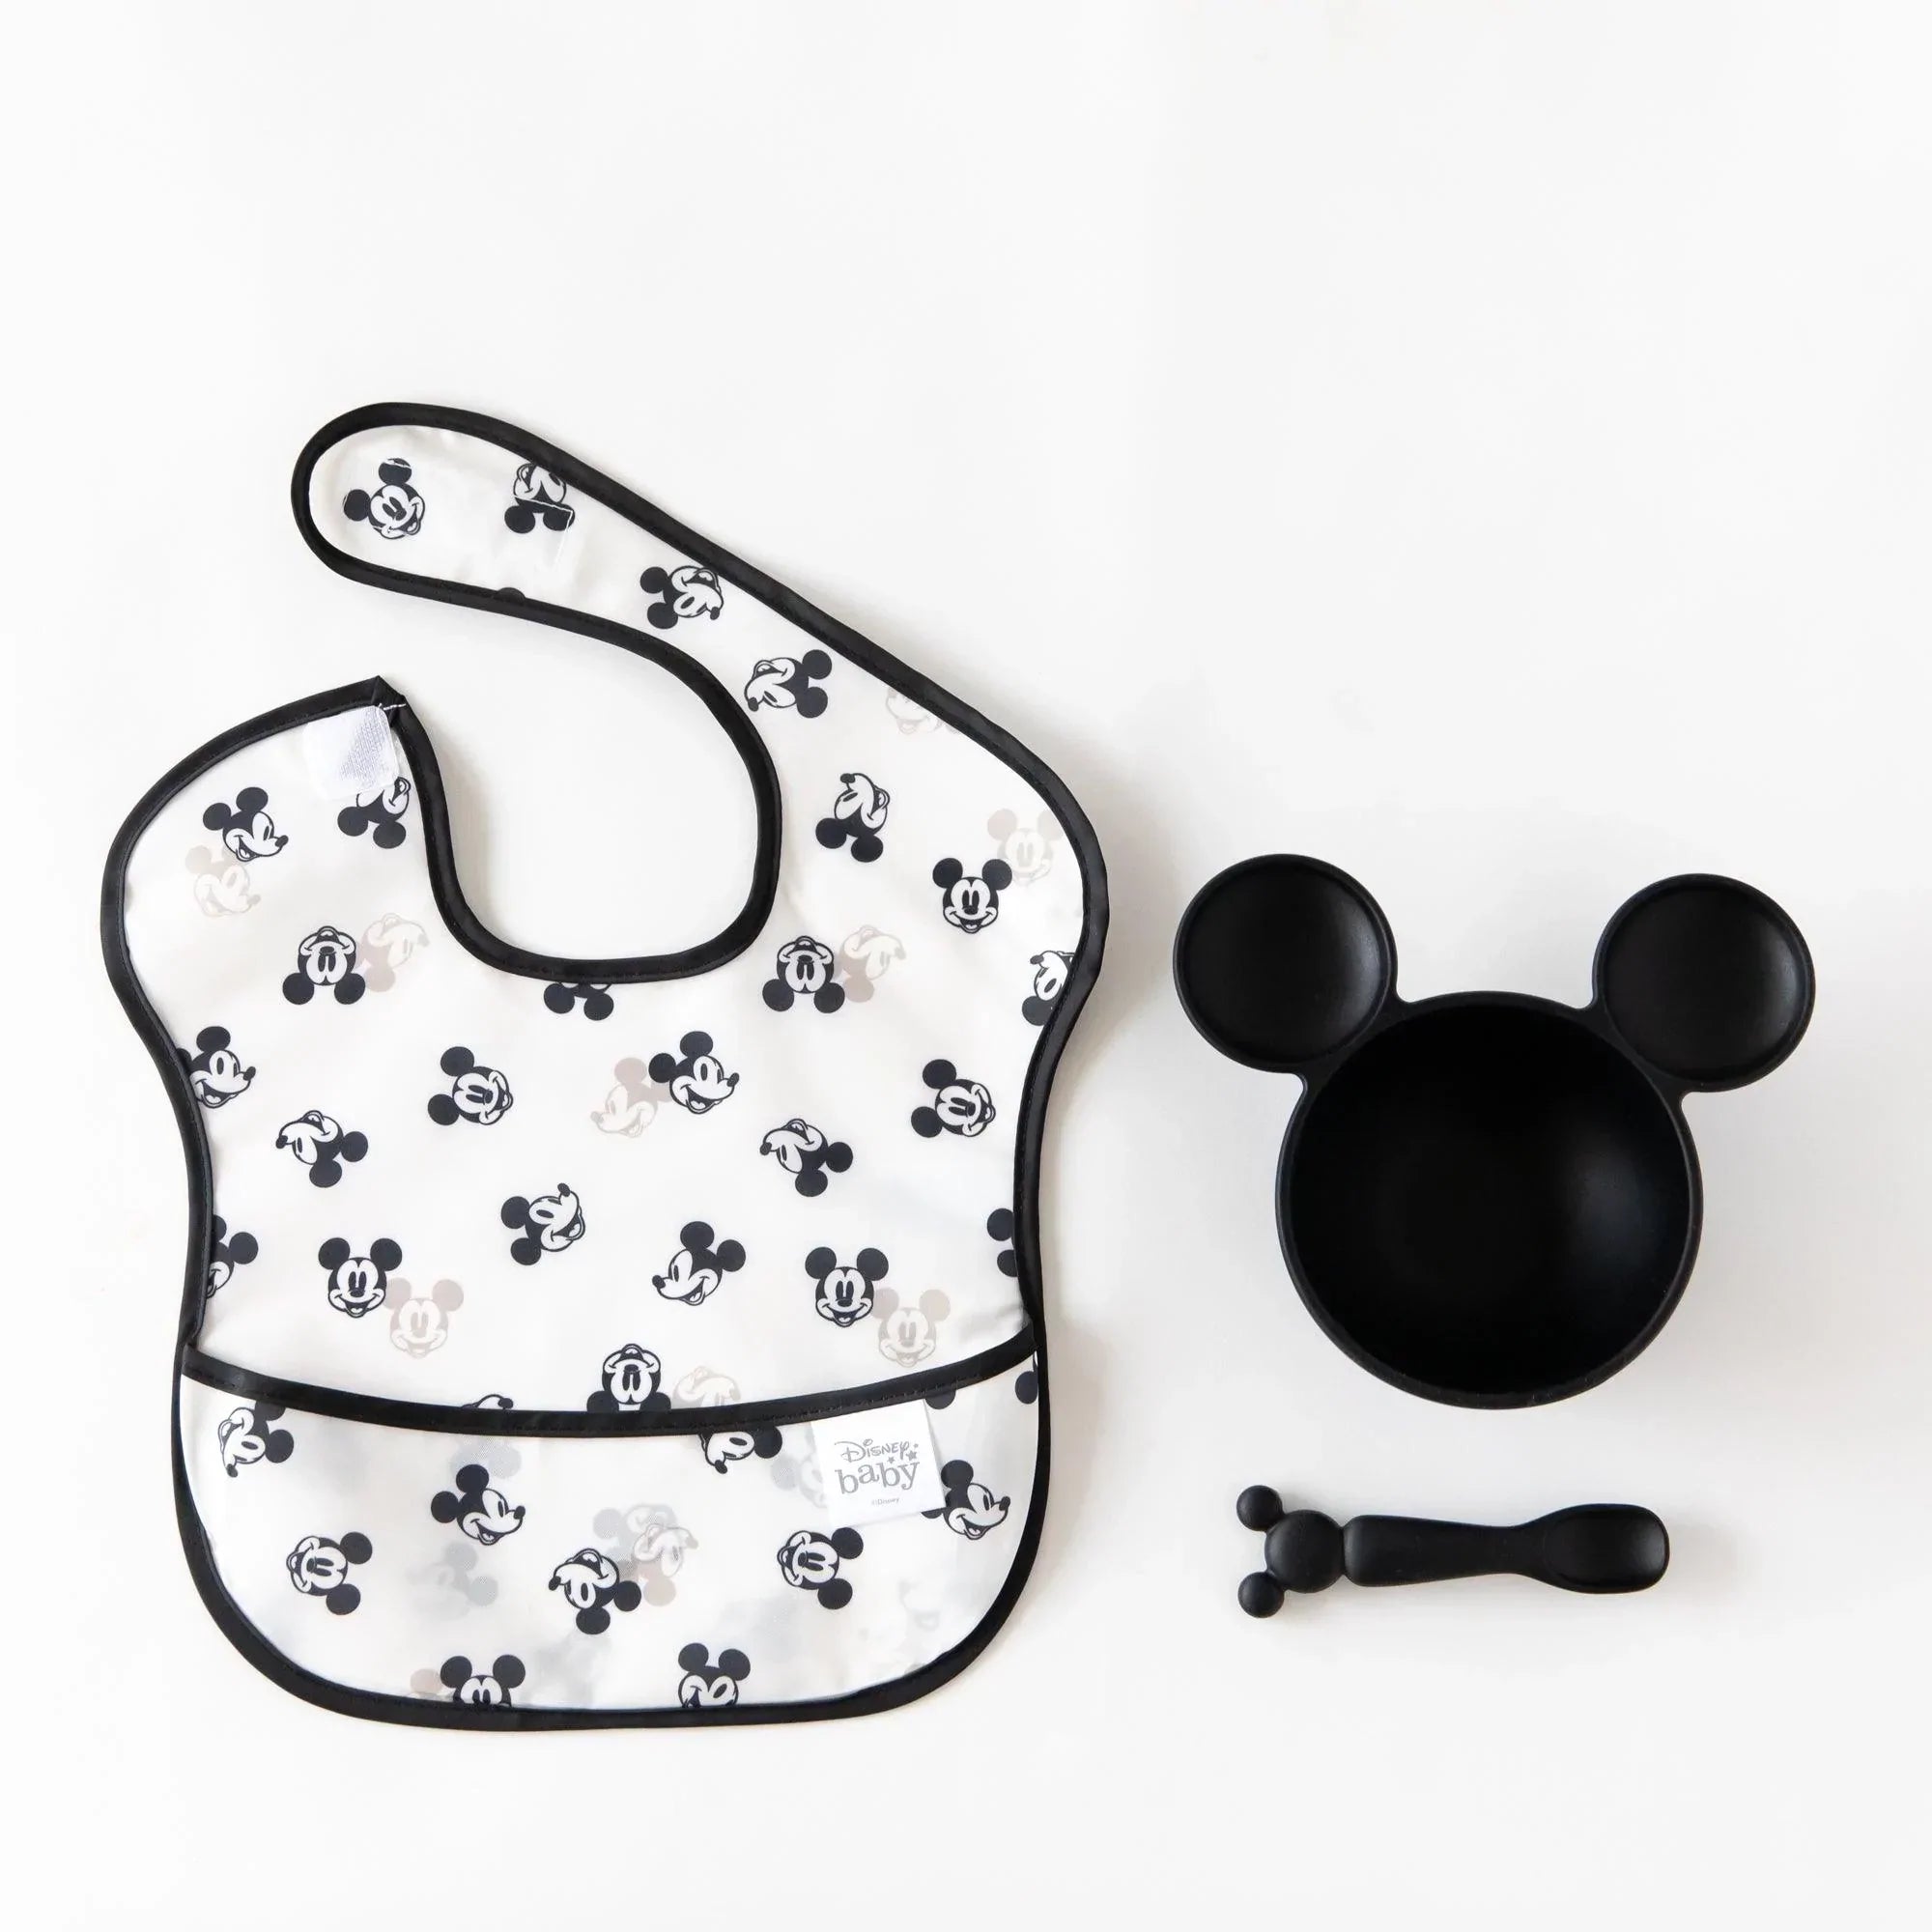 Bumkins SuperBib babero de bebé tela impermeable se adapta a bebés y niños  pequeños de 6 a 24 meses Disney Ariel y Jasmine paquete de 3 – Yaxa Costa  Rica